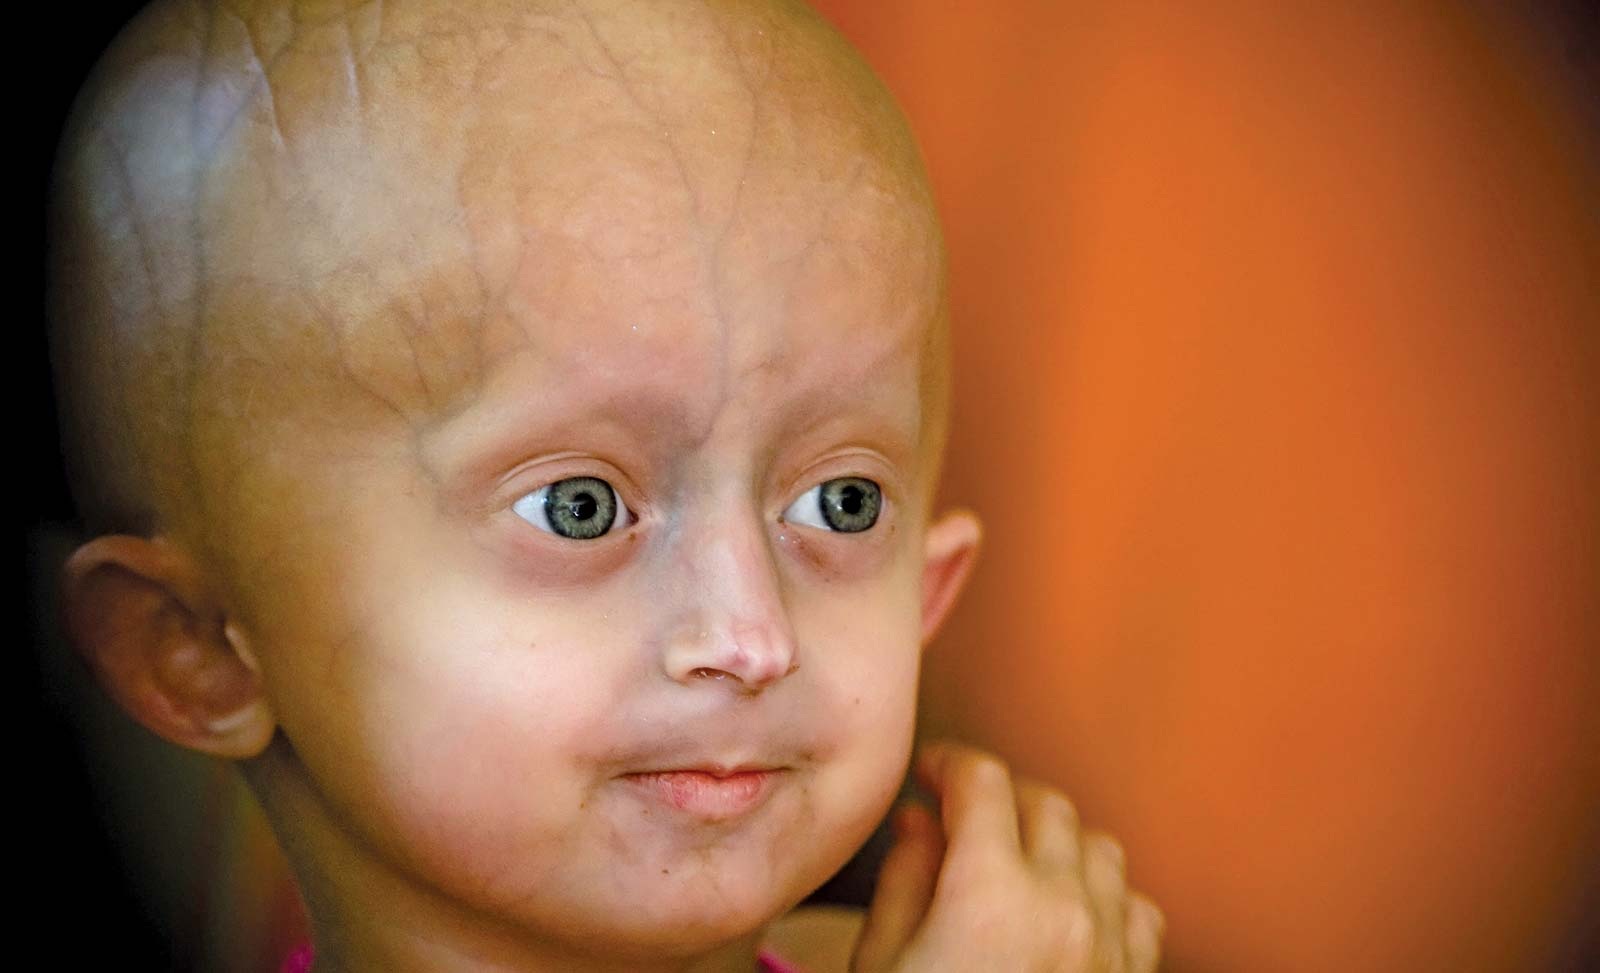 Mengenal Progeria, Penyakit Langka yang Bikin Anak Berfisik Seperti Orang Tua | NNC Netralnews